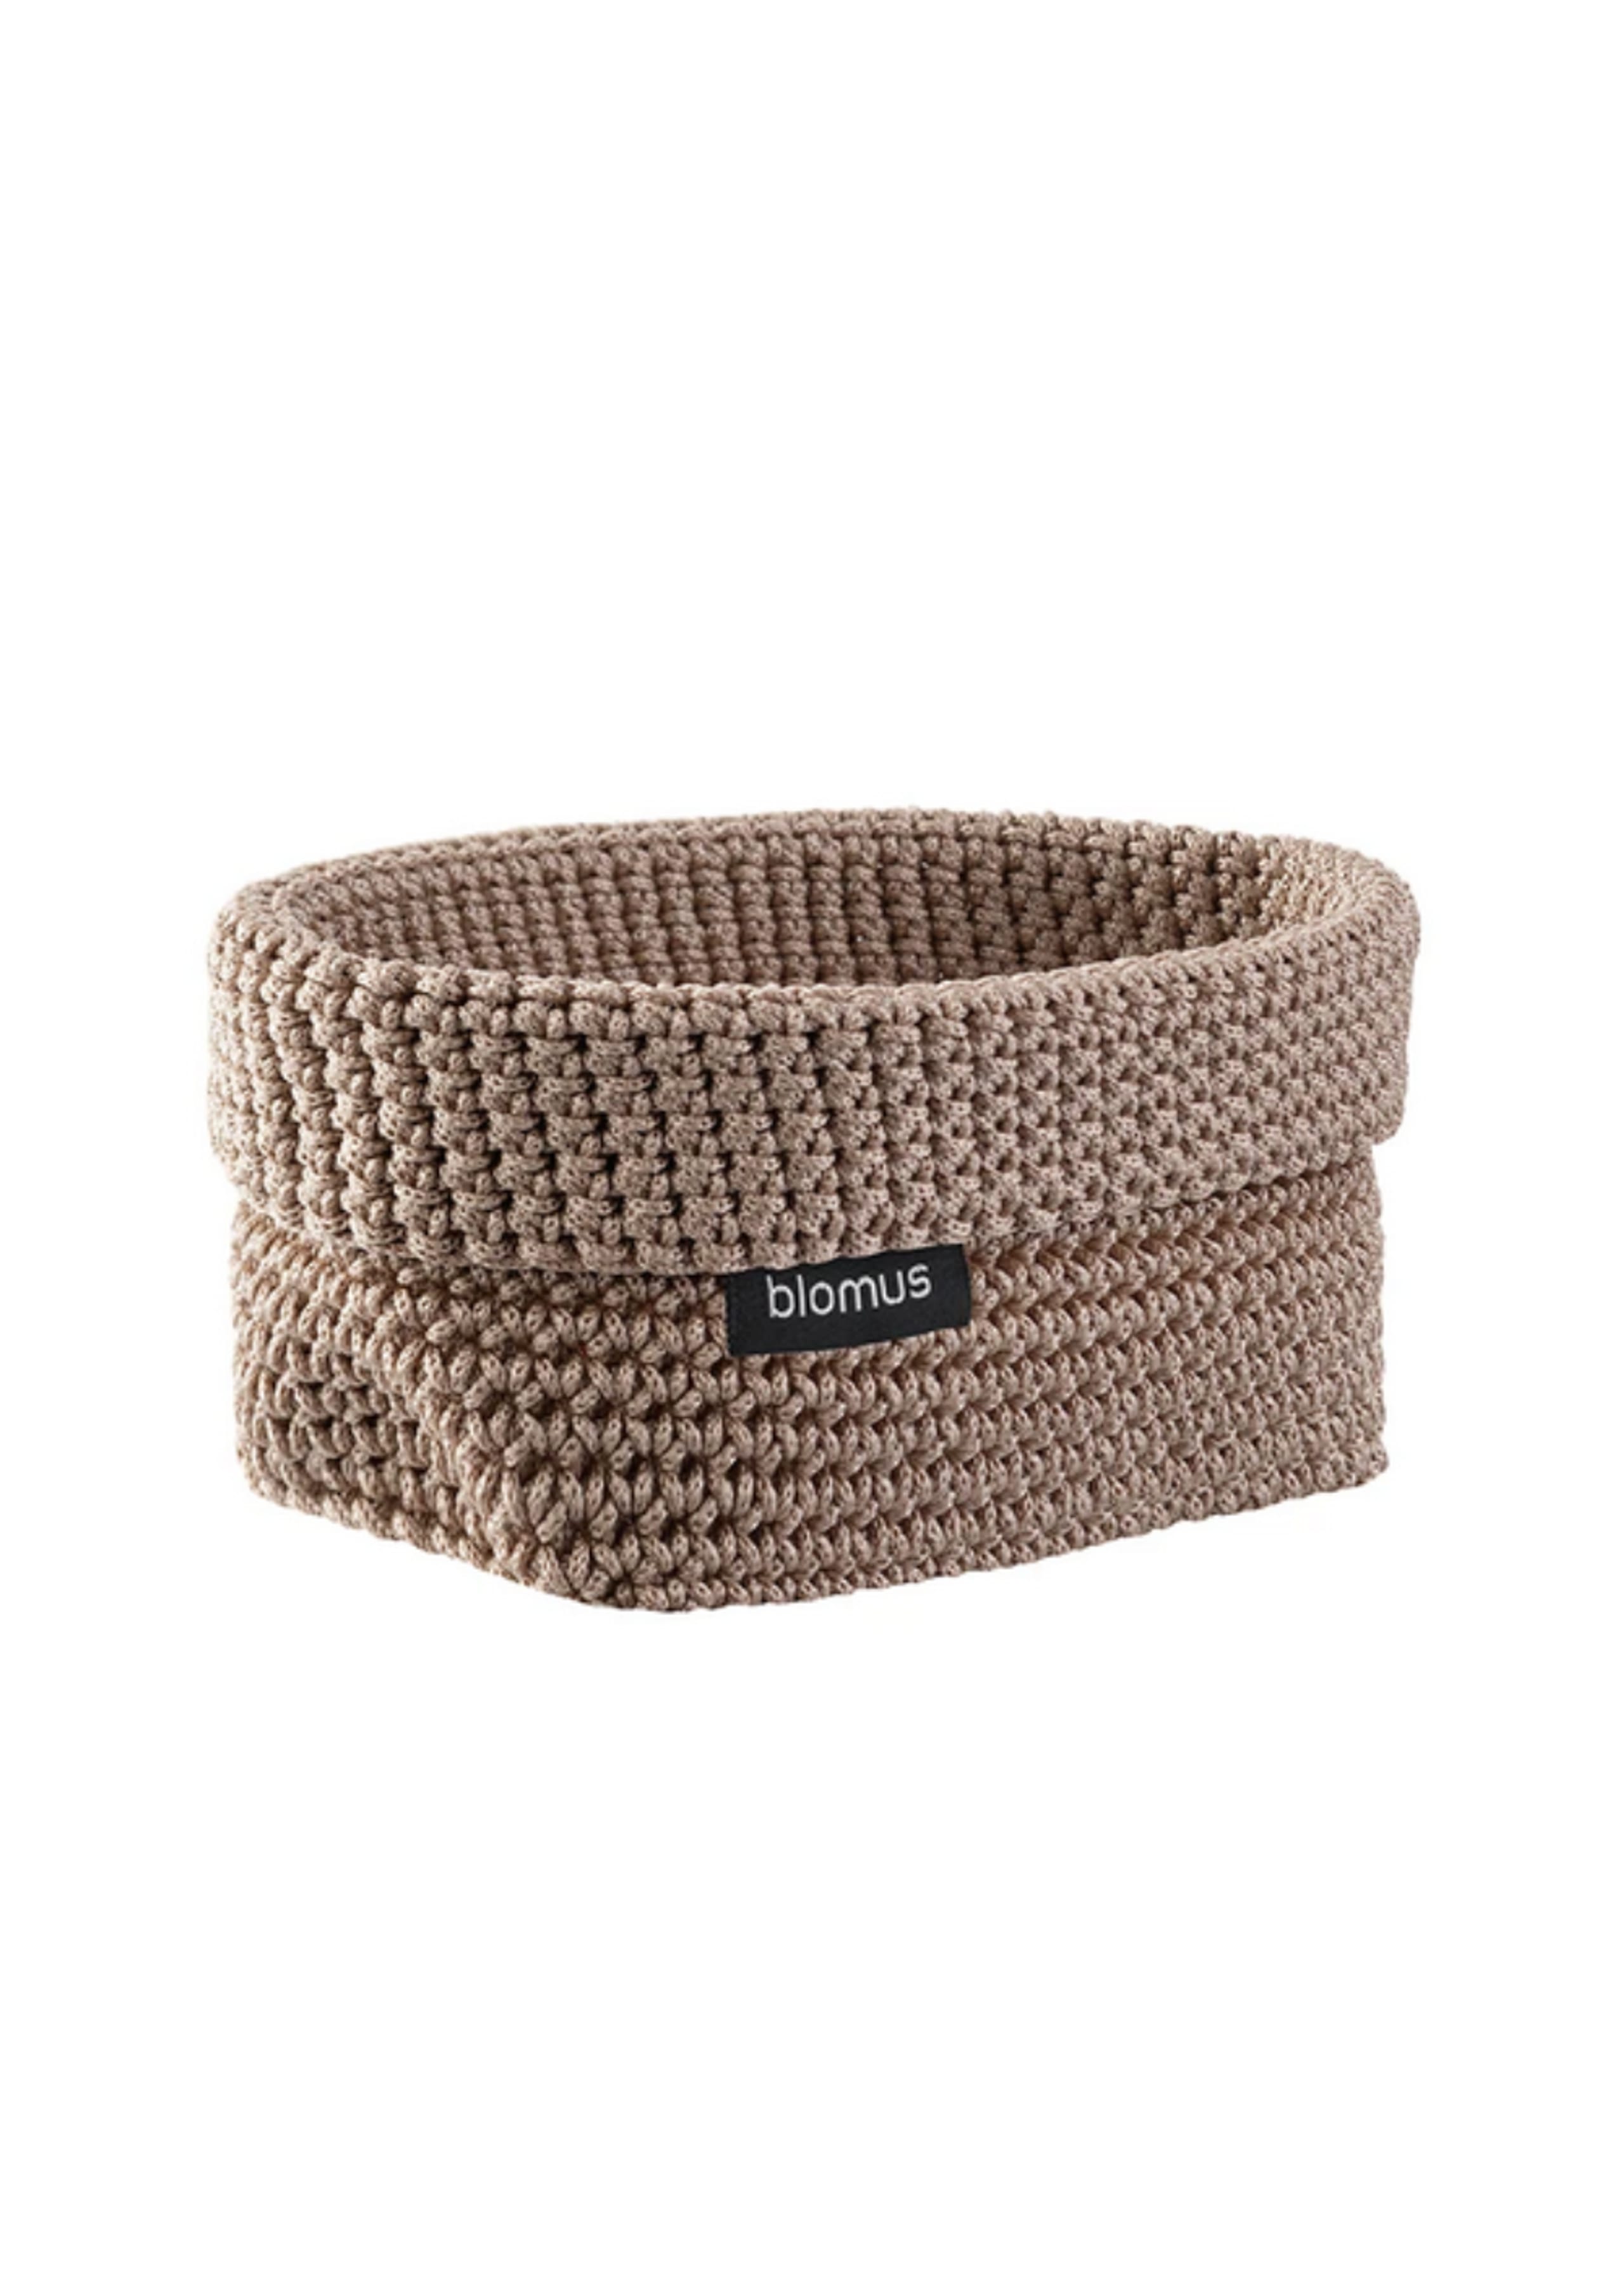 Blomus - Korb - Tela - Crochet basket - Bark - Medium